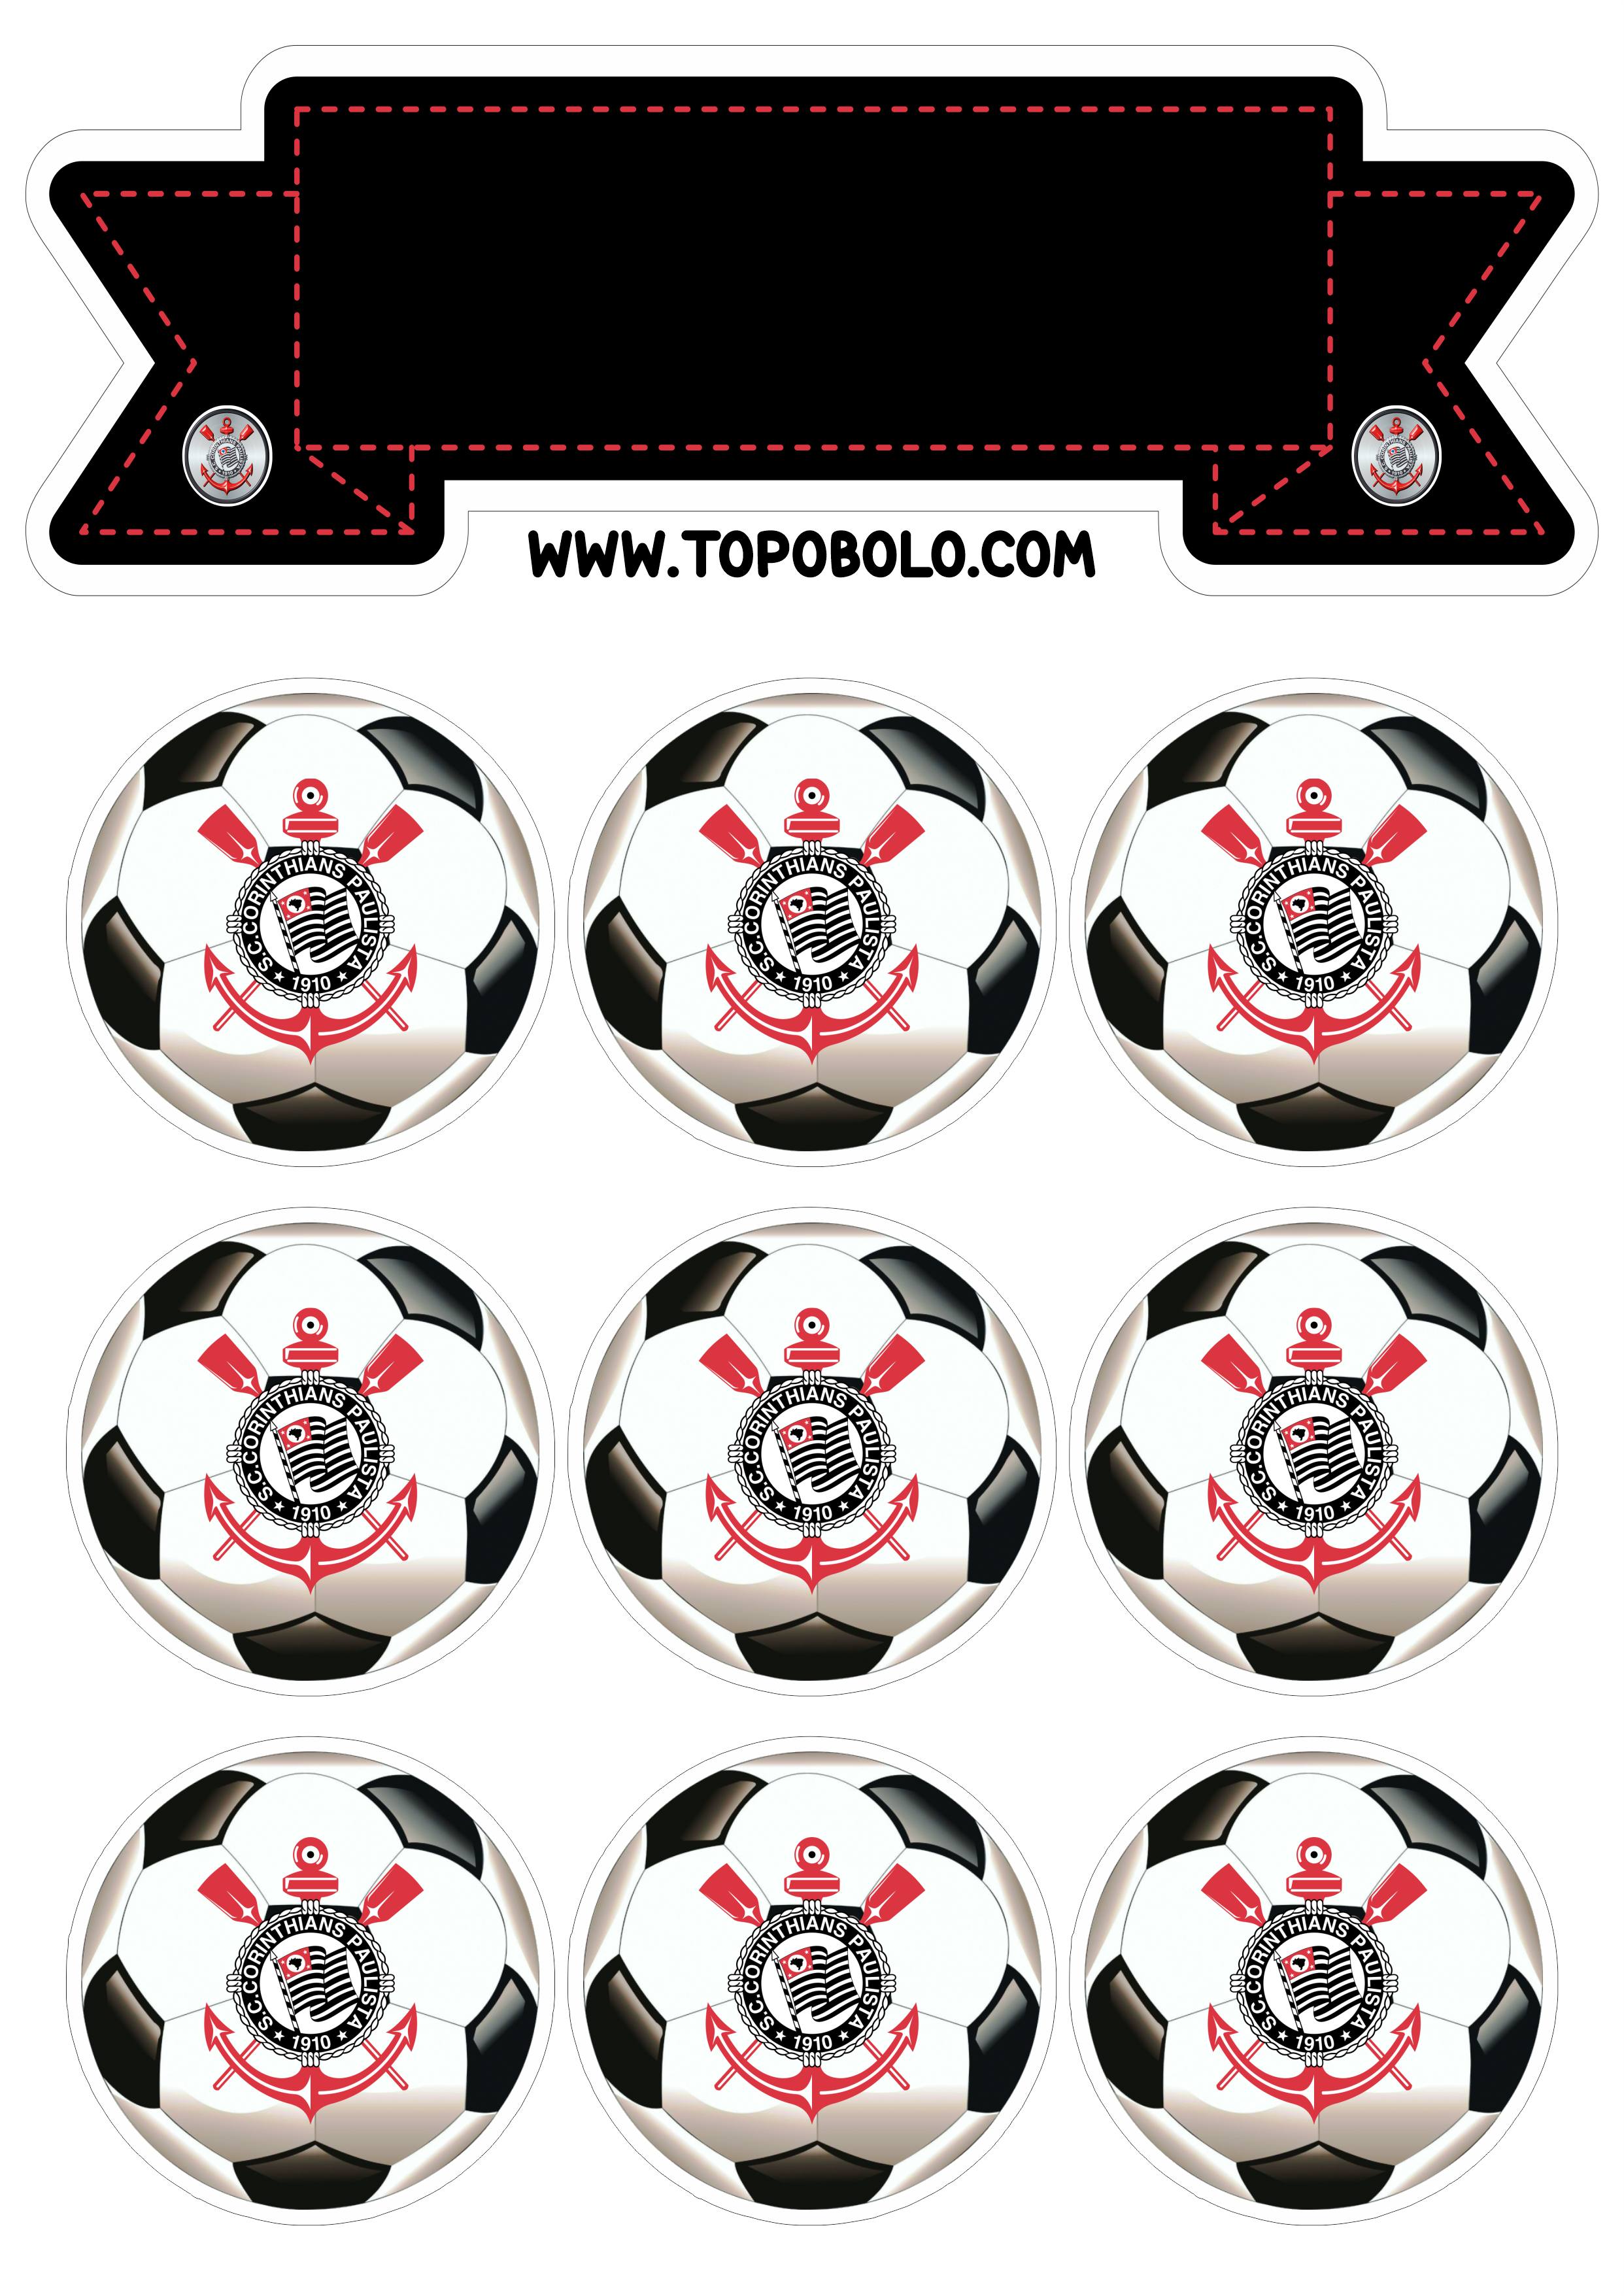 Corinthians Topo de bolo para imprimir timão futebol decoração de aniversário bolas de futebol  ng